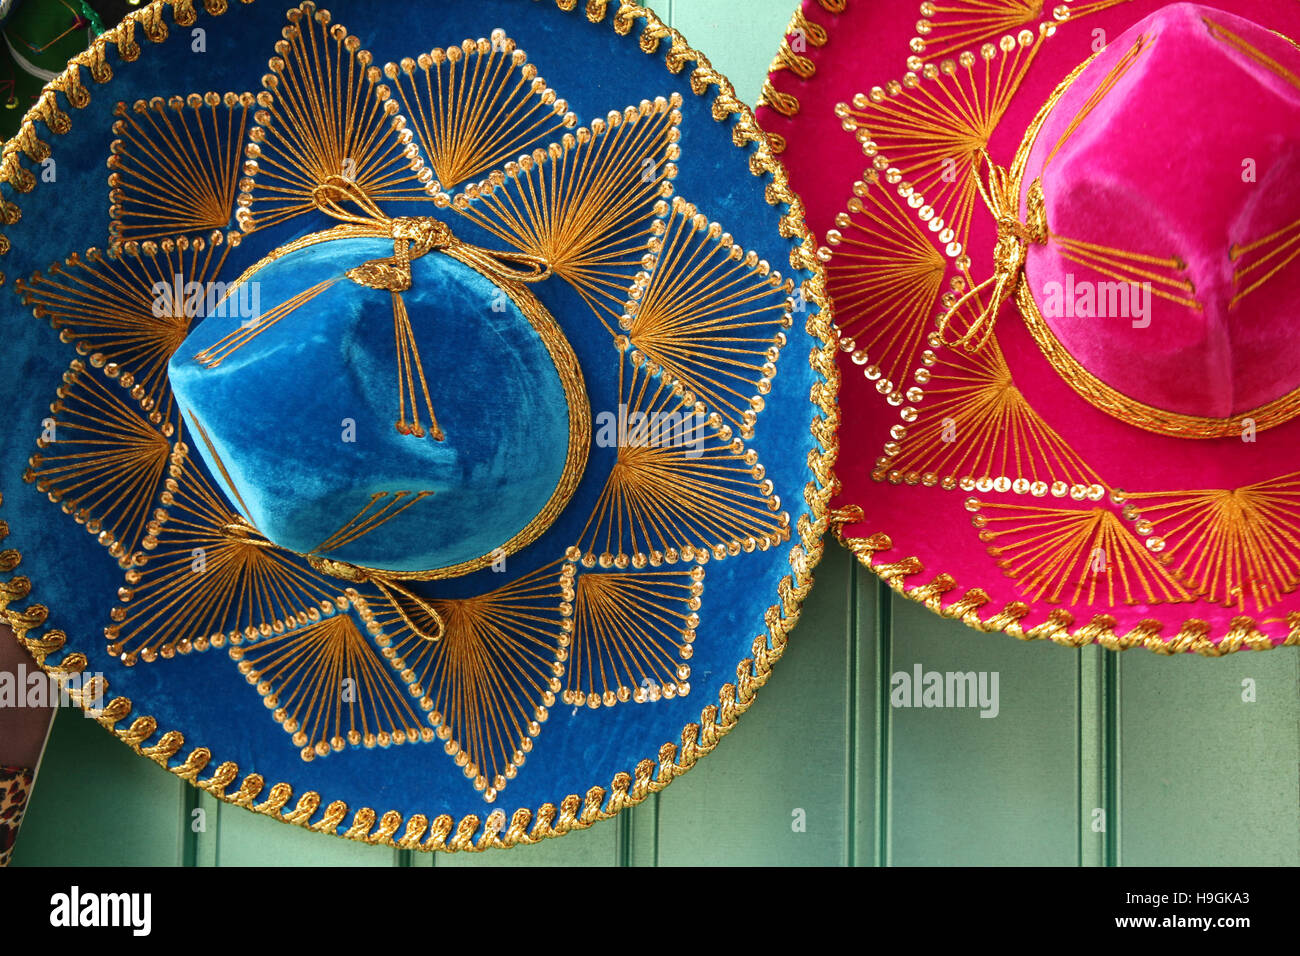 Rose & bleu coloré chapeaux sombreros mexicains ou suspendu à une porte verte, Cozumel, péninsule du Yucatan, Quintana Roo, Mexique. Banque D'Images